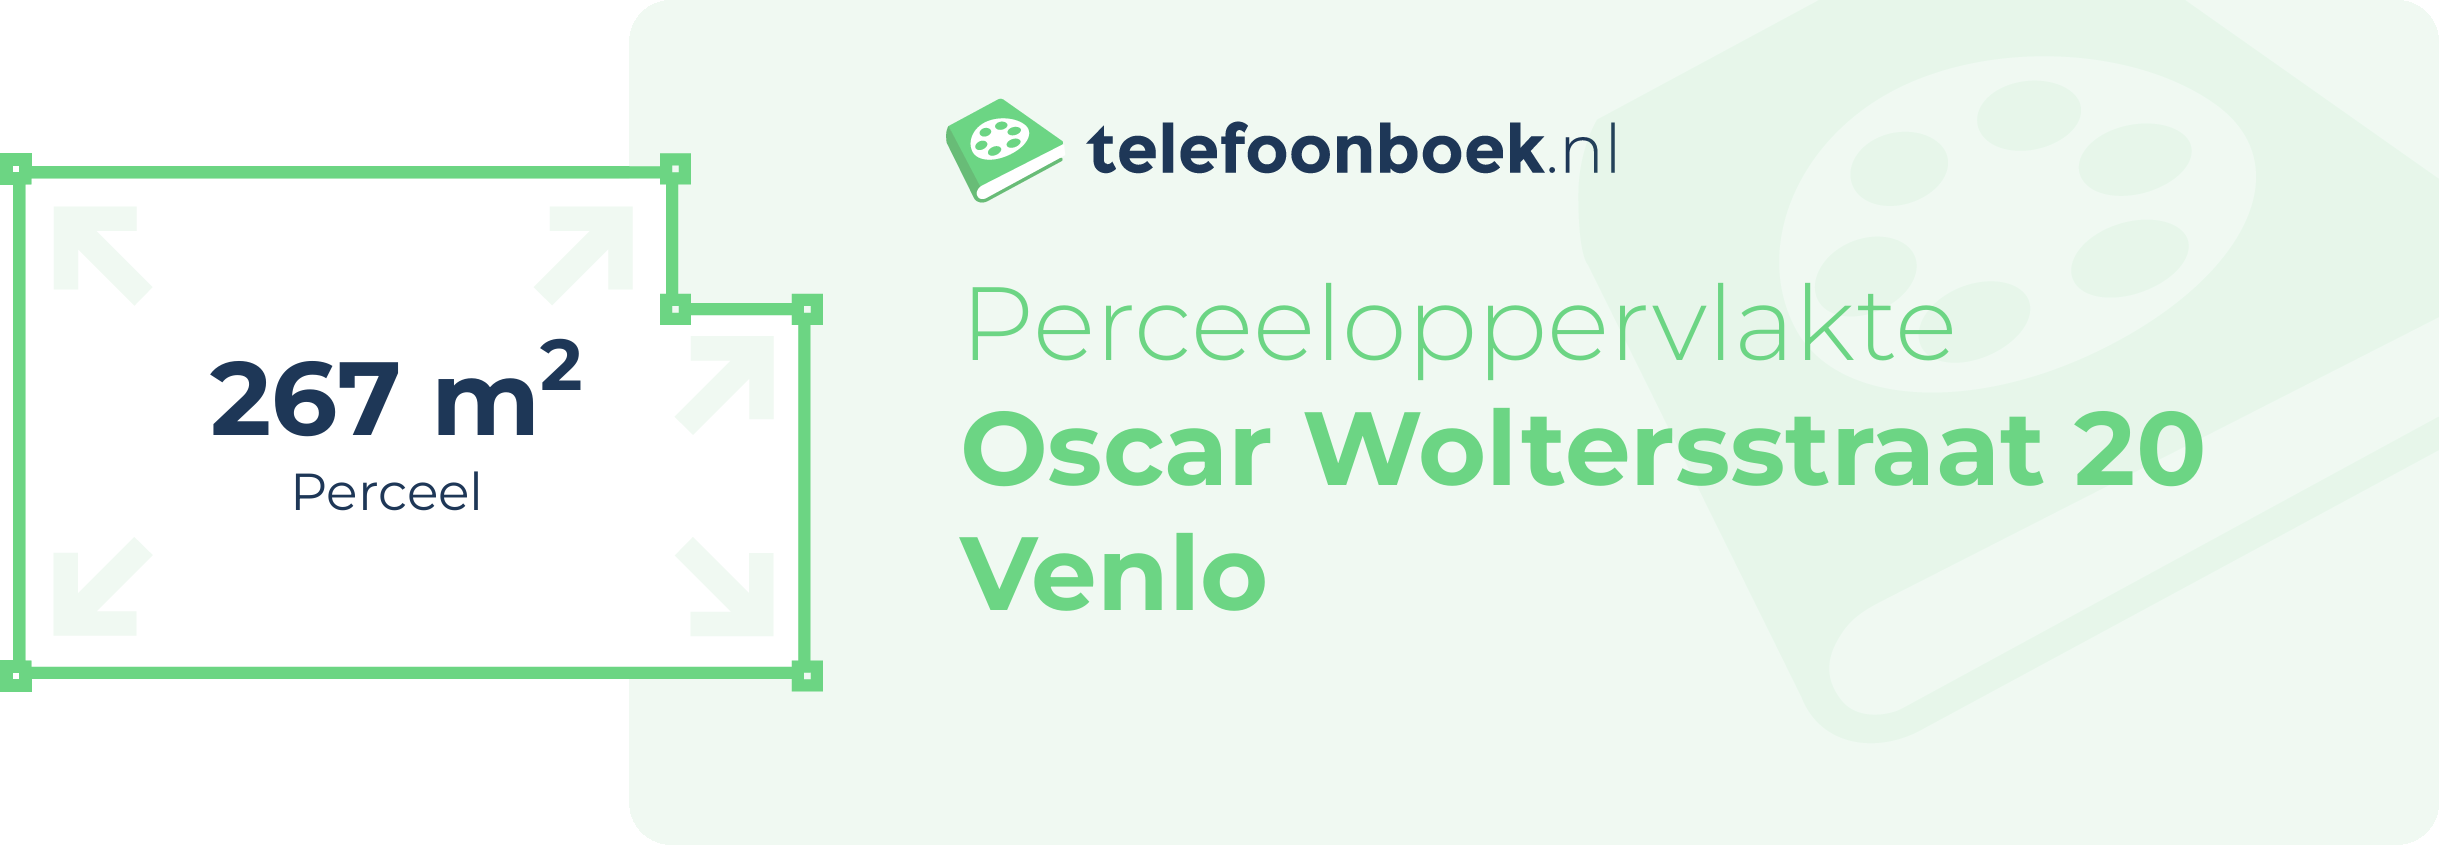 Perceeloppervlakte Oscar Woltersstraat 20 Venlo